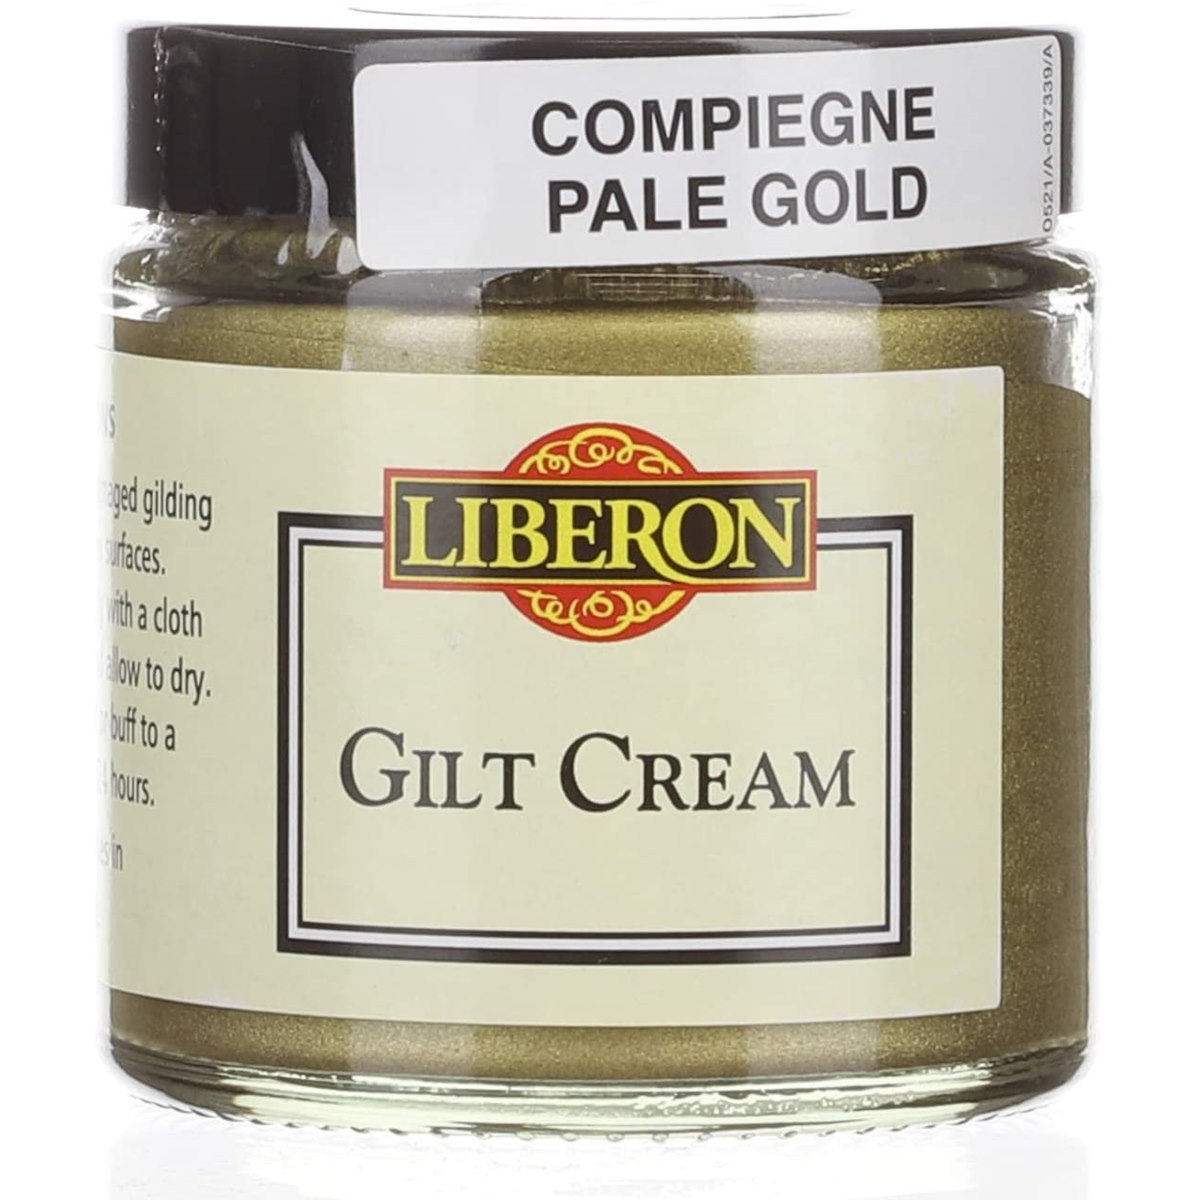 Liberon Gilt Cream Compiegne Pale Gold